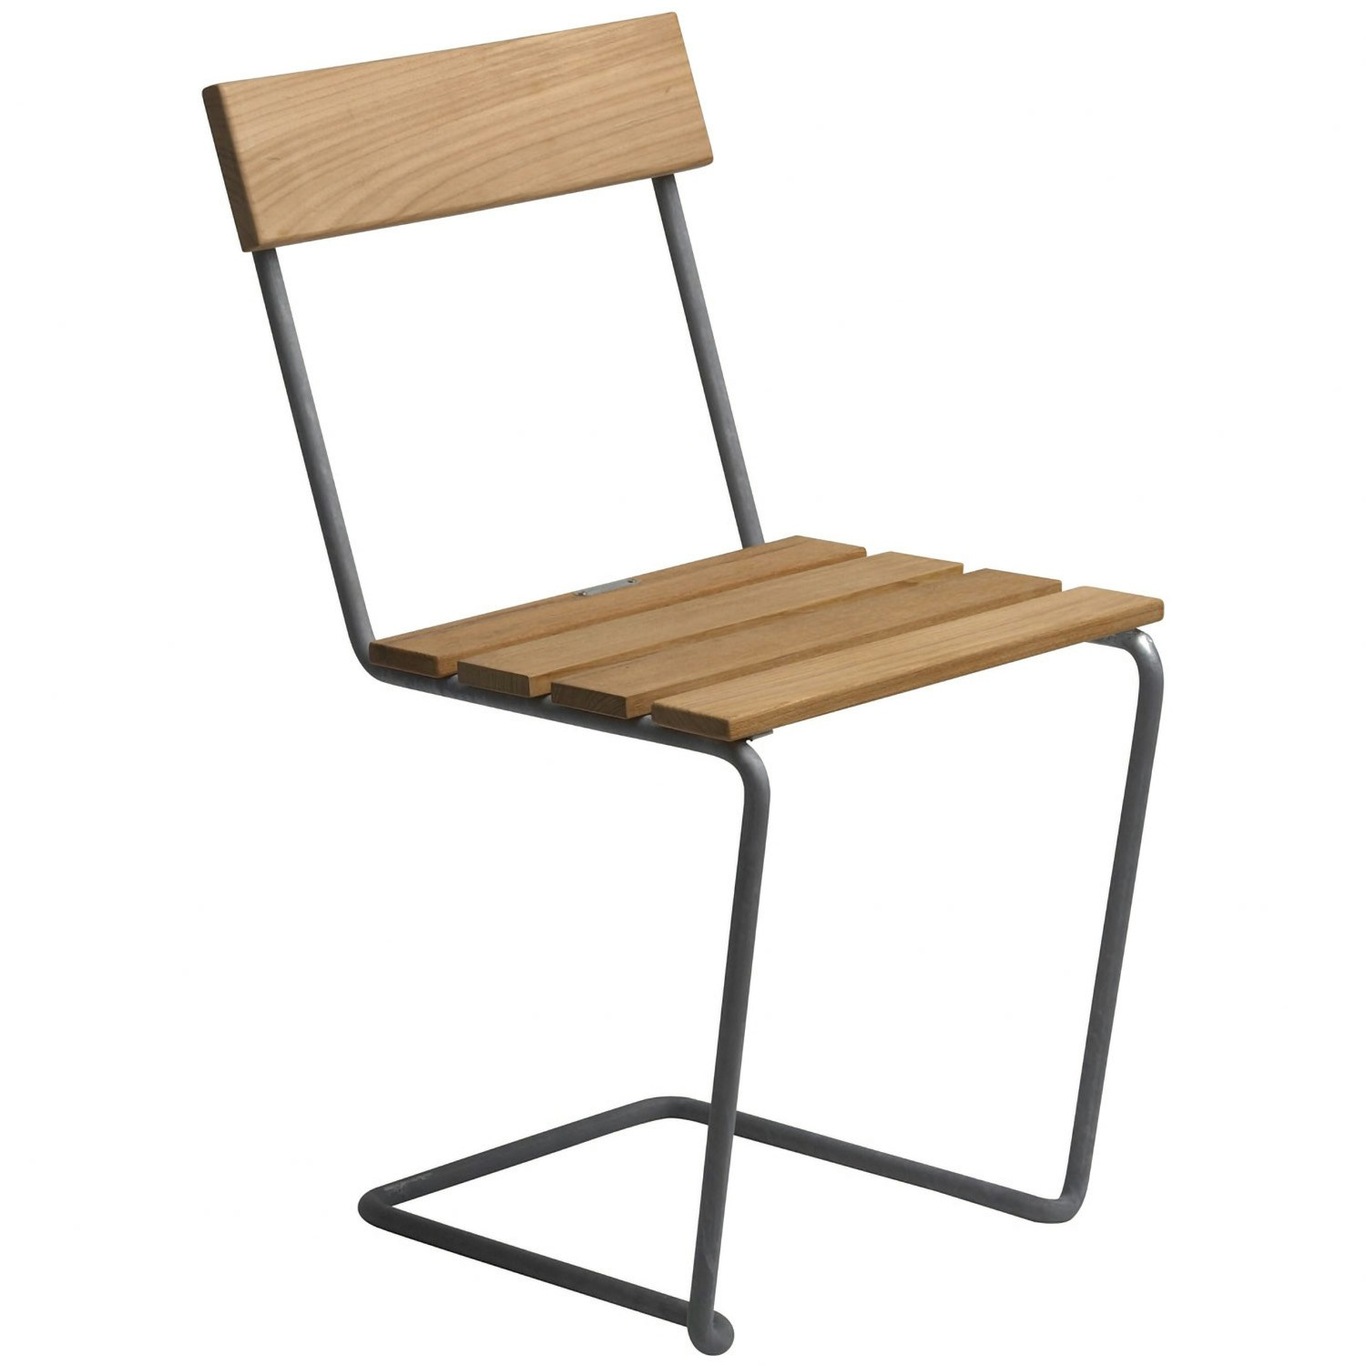 Chair 1, Untreated Teak / Hot Galvanized Steel